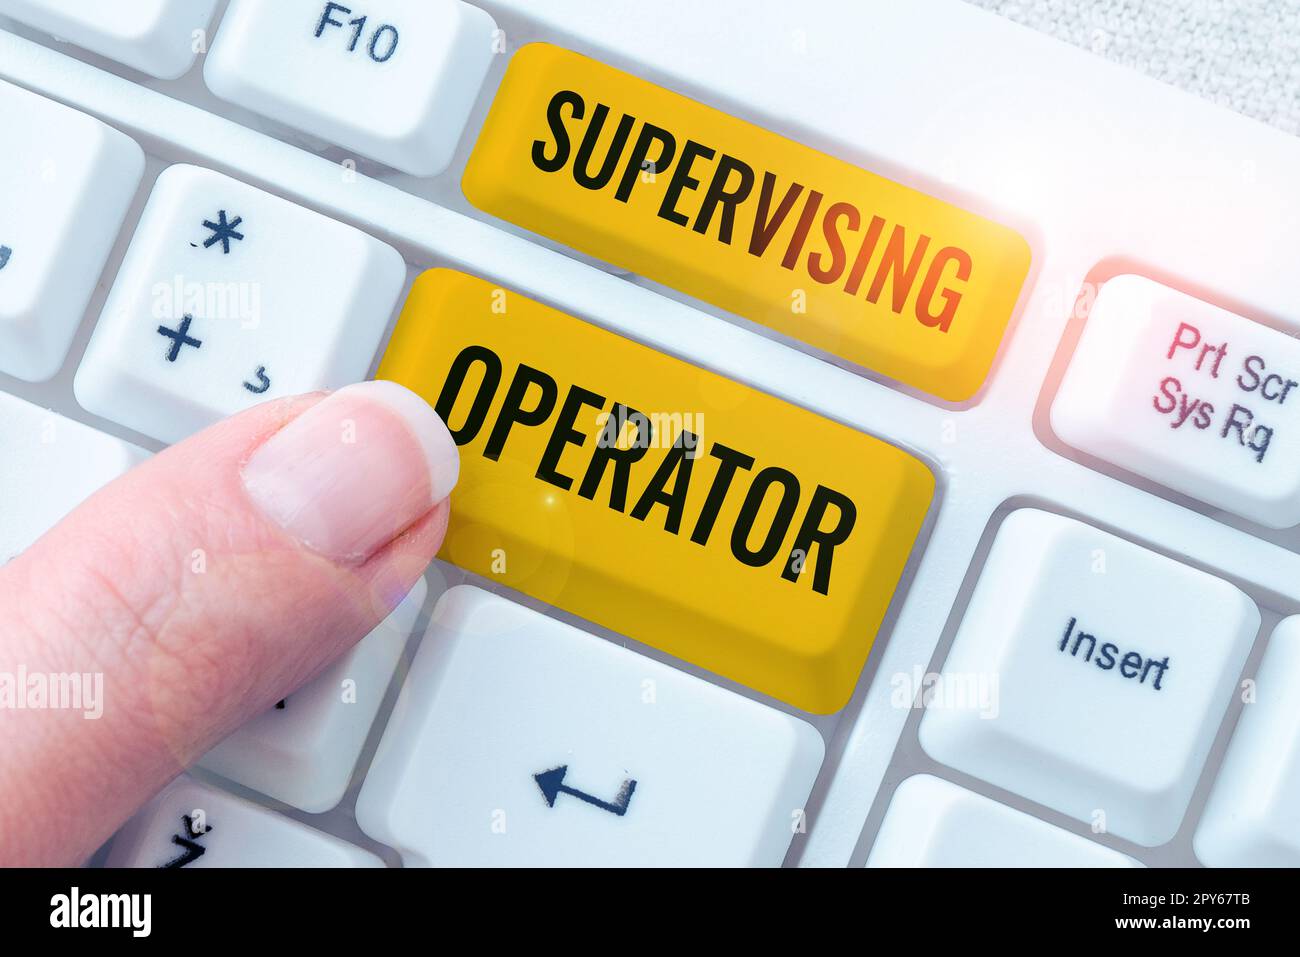 Schild mit der Aufschrift „Supervising Operator“. Wort für Überwachung und Koordination des Anlagenbetriebs Stockfoto